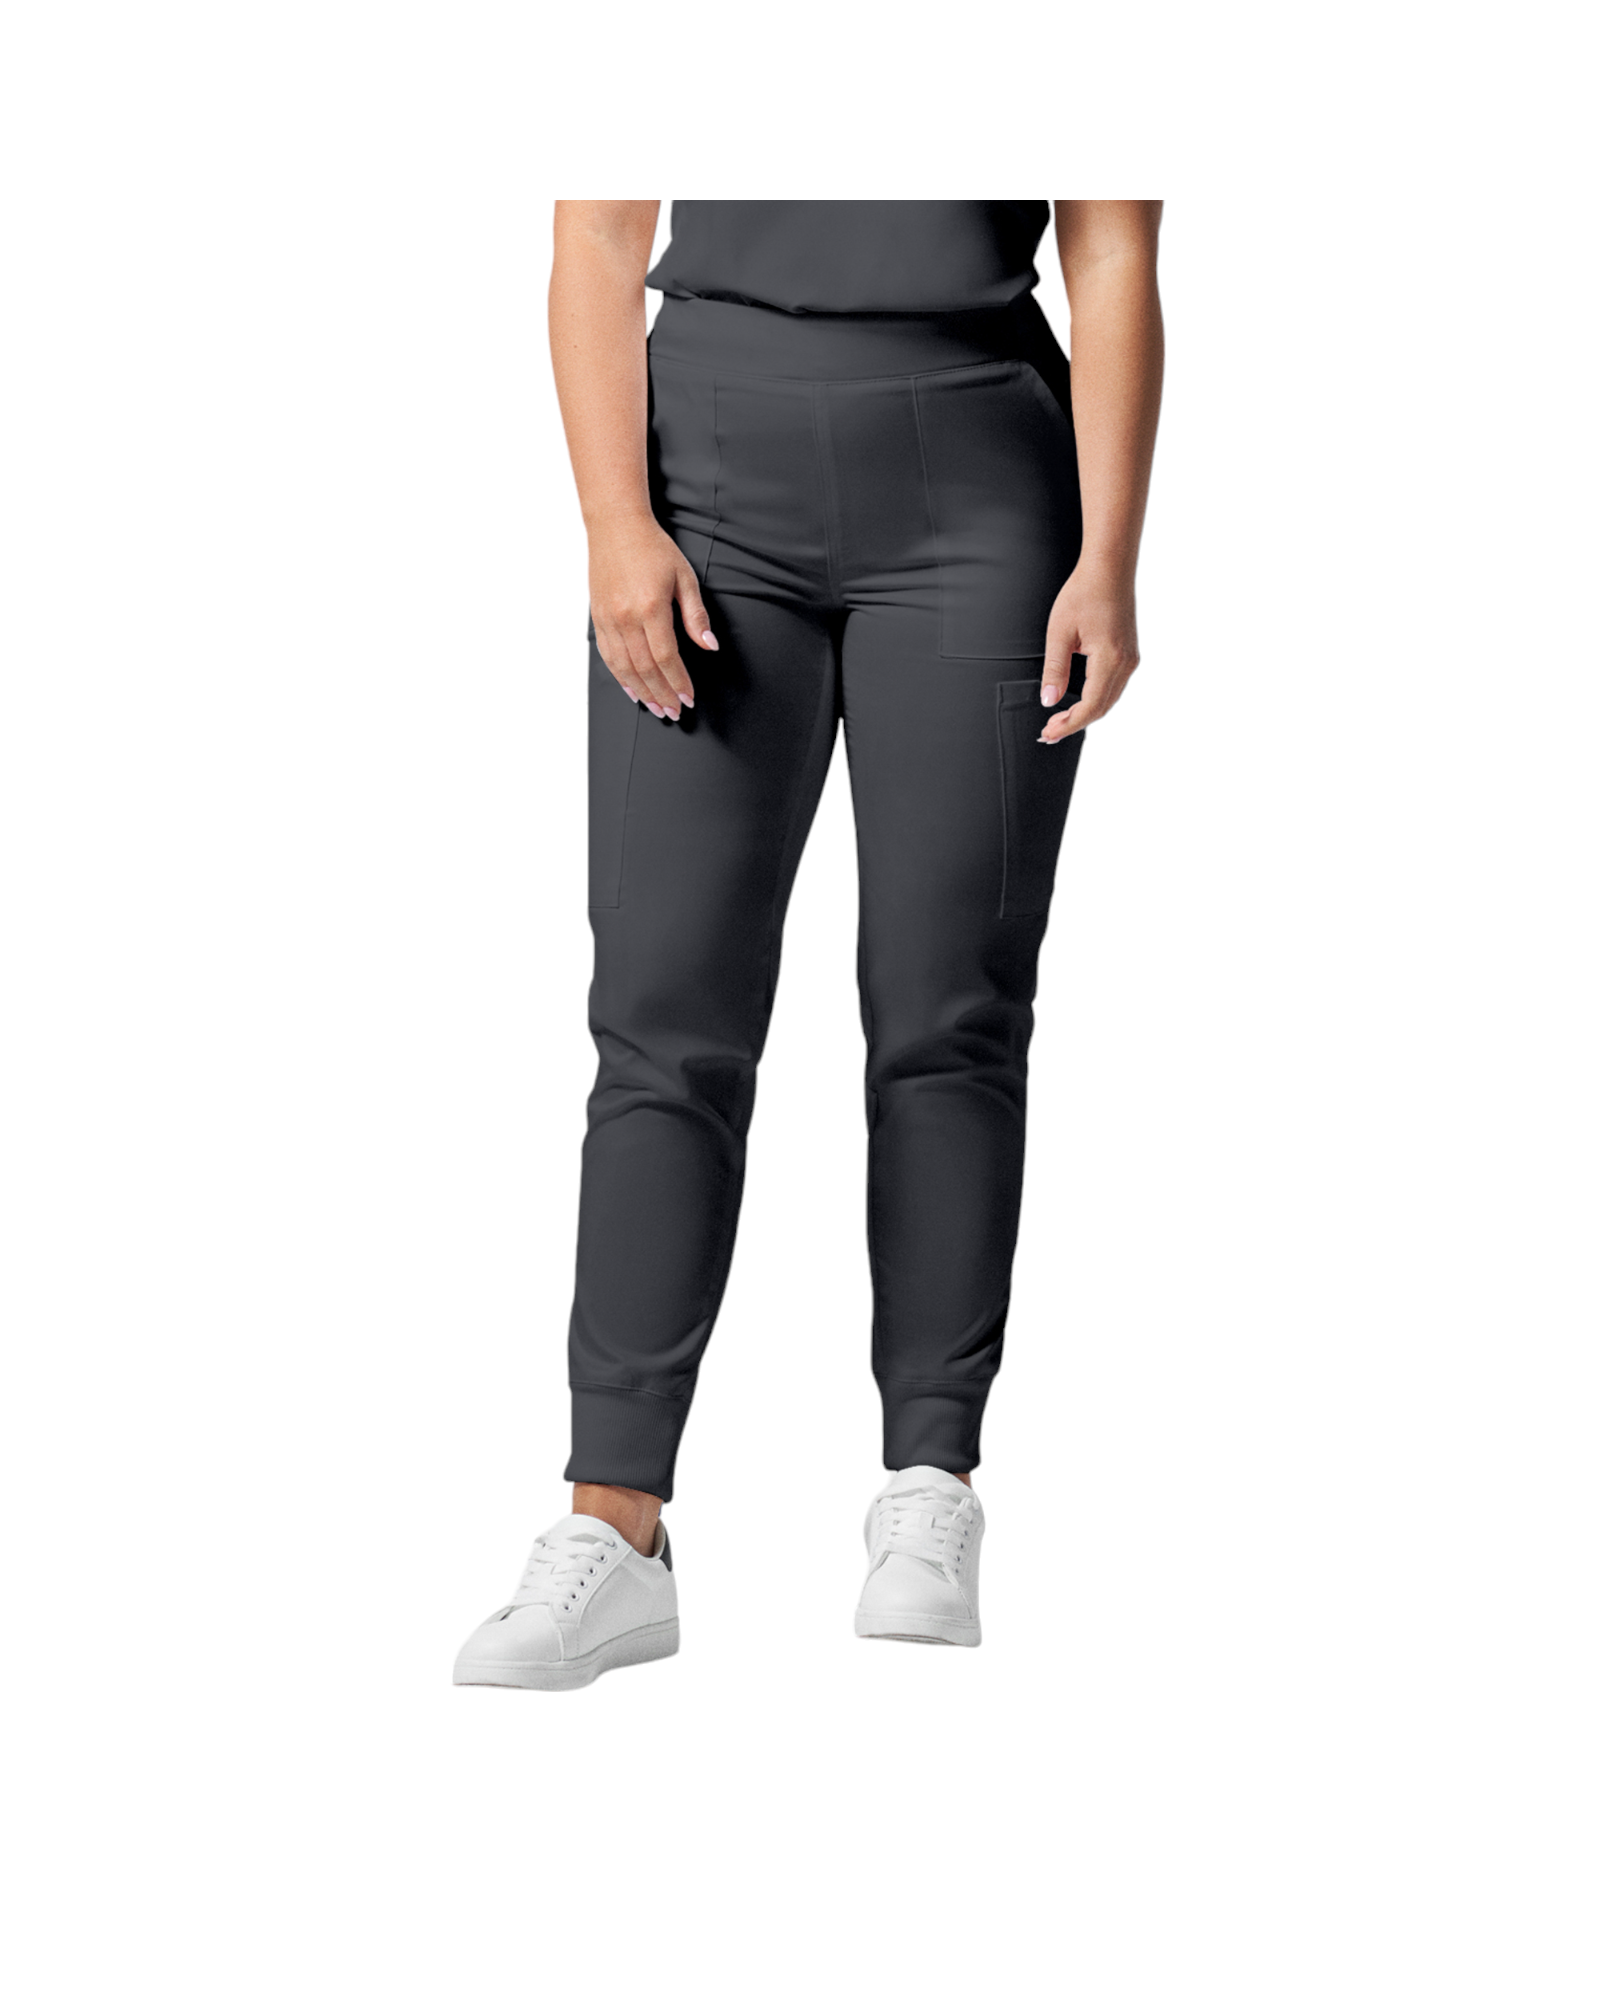 Pantalon de style jogger 6 poches pour femmes Landau Proflex #LB406-OS couleur Graphite